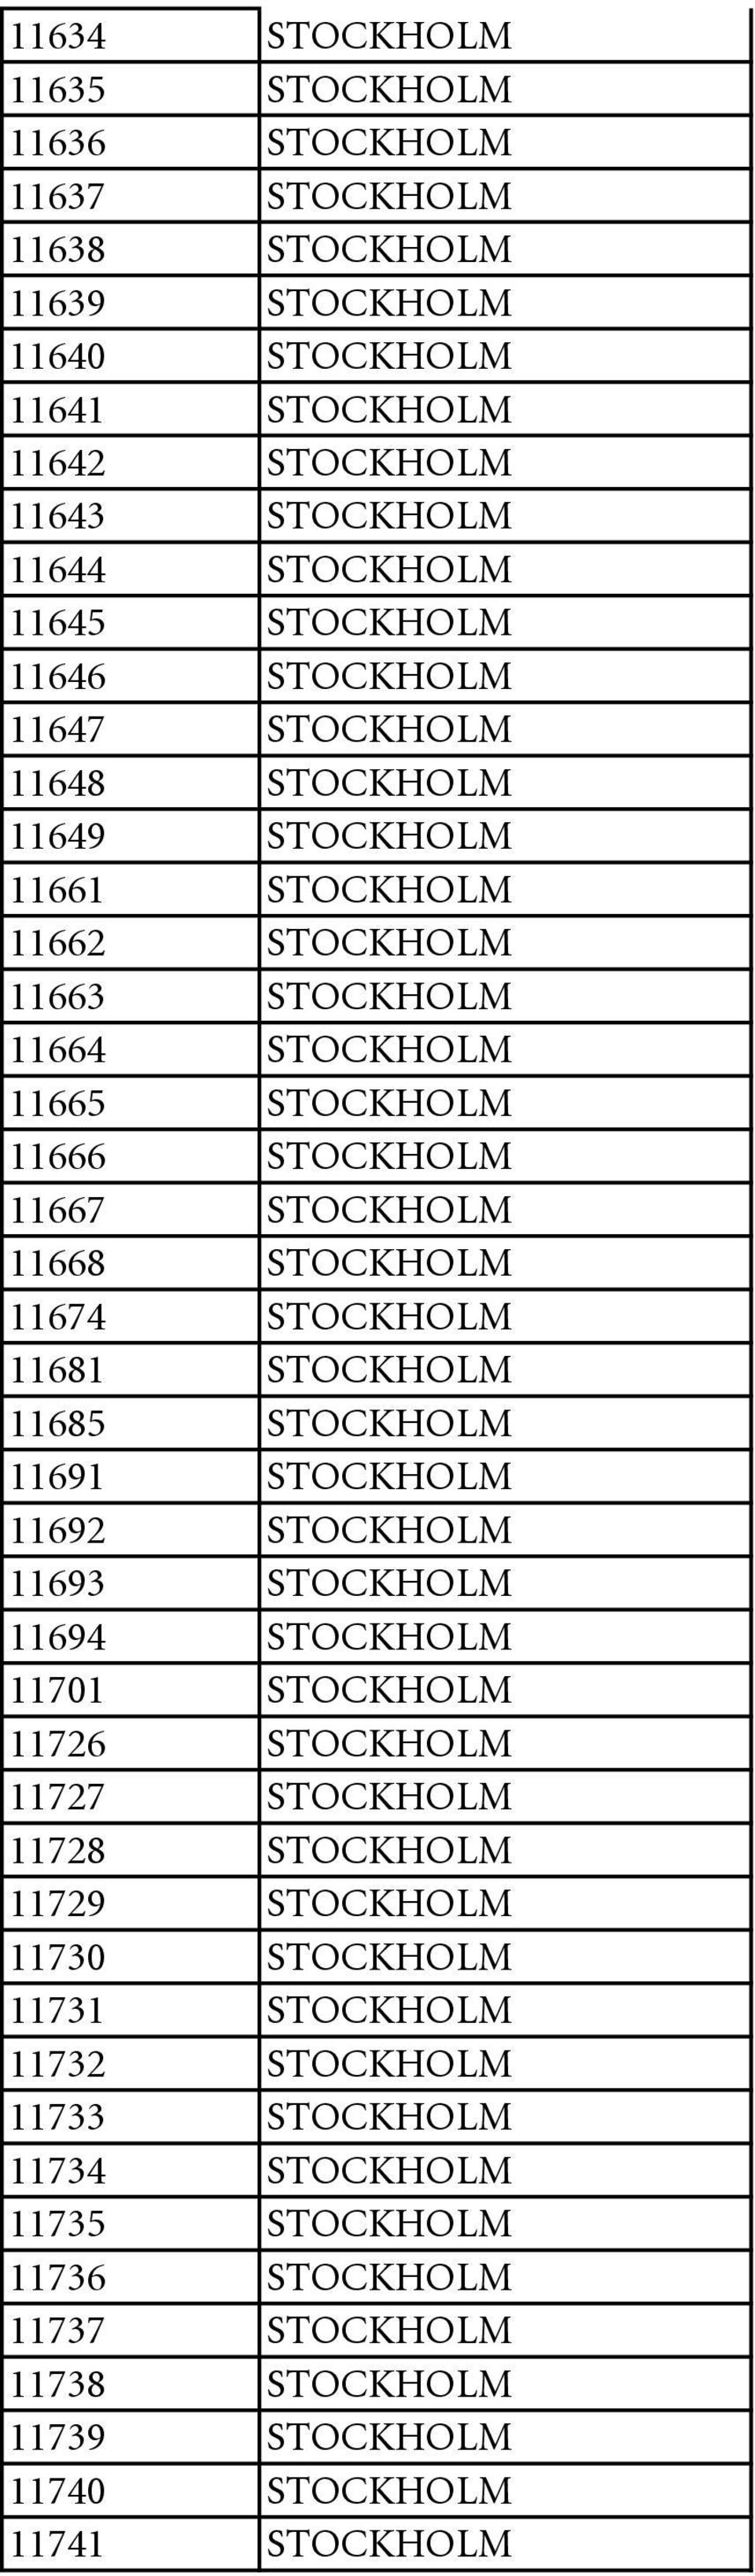 11674 STOCKHOLM 11681 STOCKHOLM 11685 STOCKHOLM 11691 STOCKHOLM 11692 STOCKHOLM 11693 STOCKHOLM 11694 STOCKHOLM 11701 STOCKHOLM 11726 STOCKHOLM 11727 STOCKHOLM 11728 STOCKHOLM 11729 STOCKHOLM